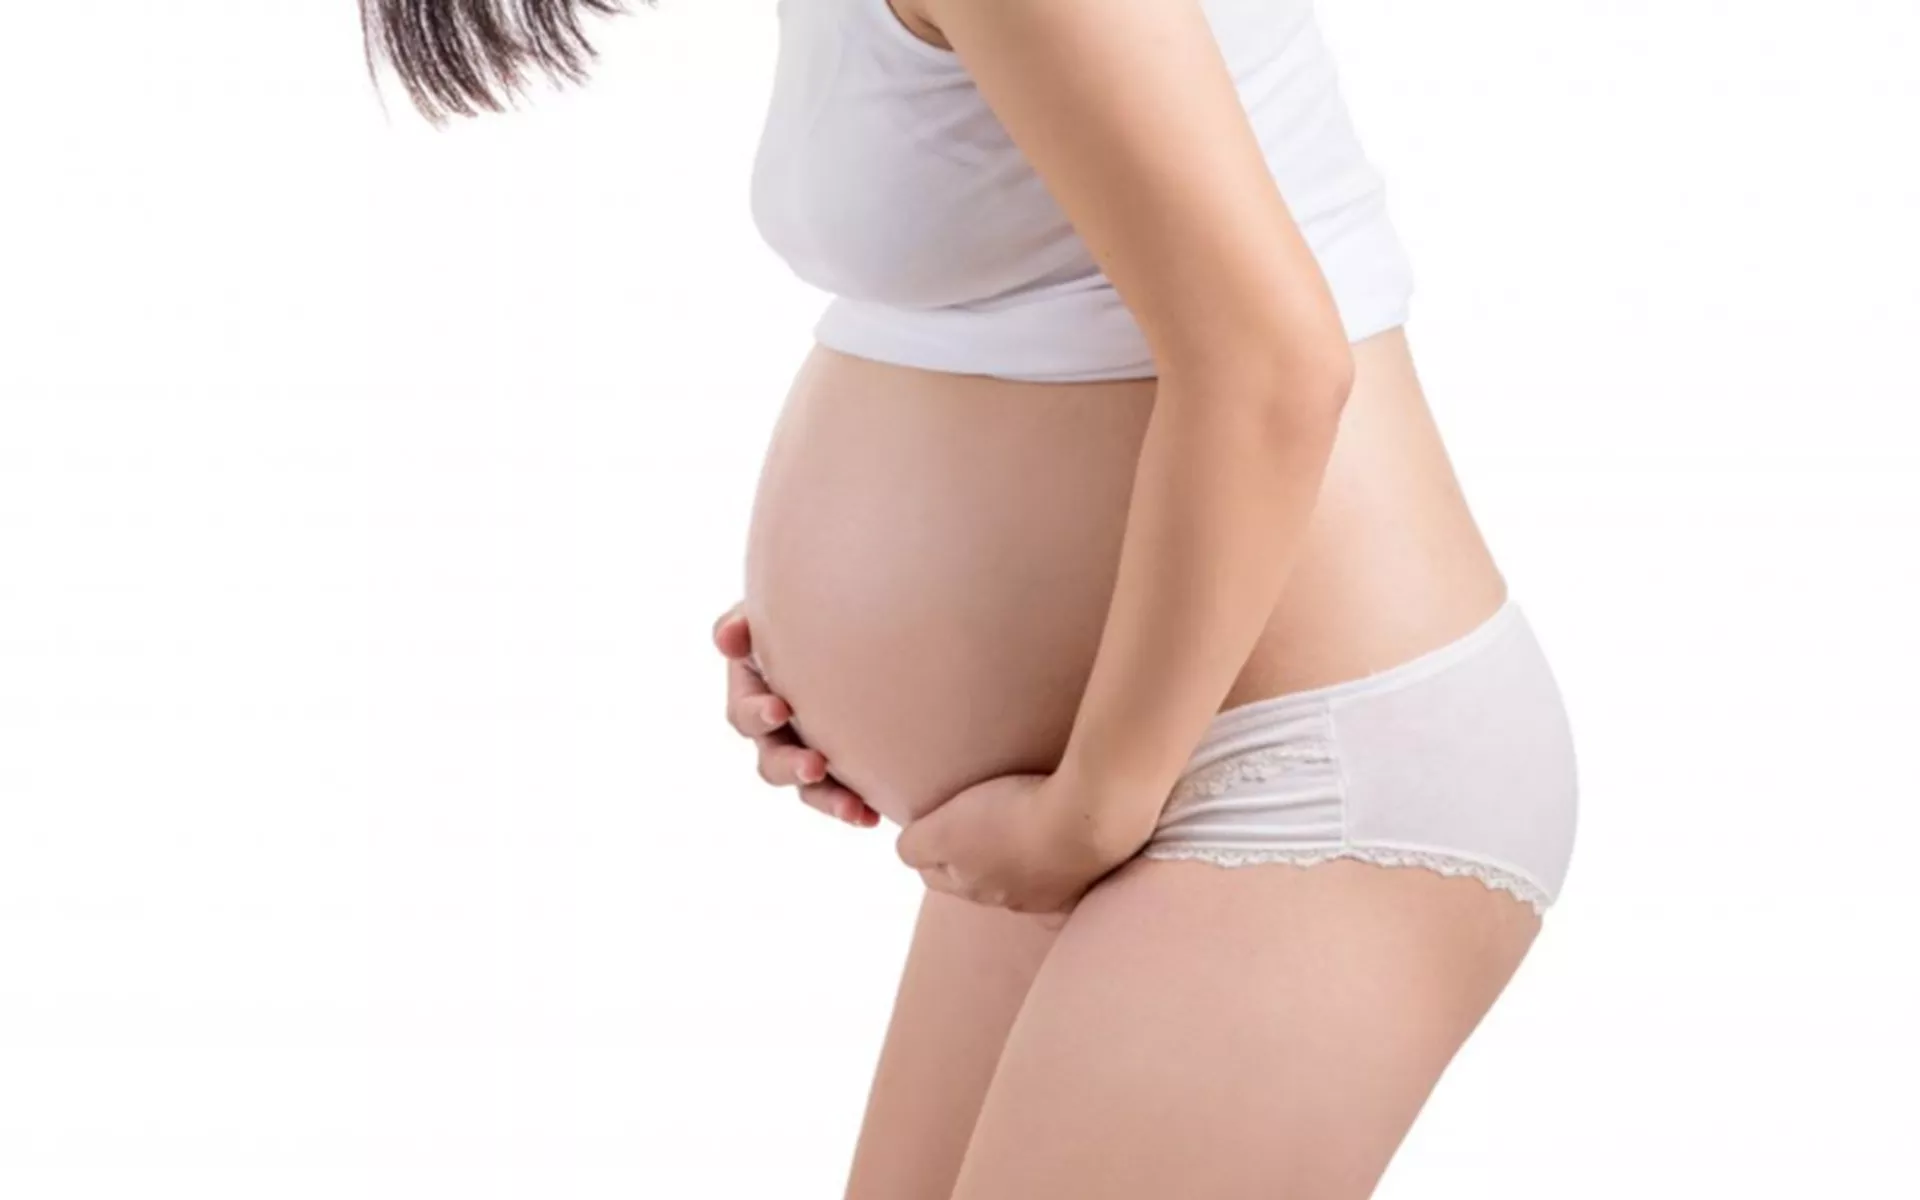 Hamilelikte Göbek Genişlemesi Neden Olur? Hızlı Karın Şişmesi Normal mi?